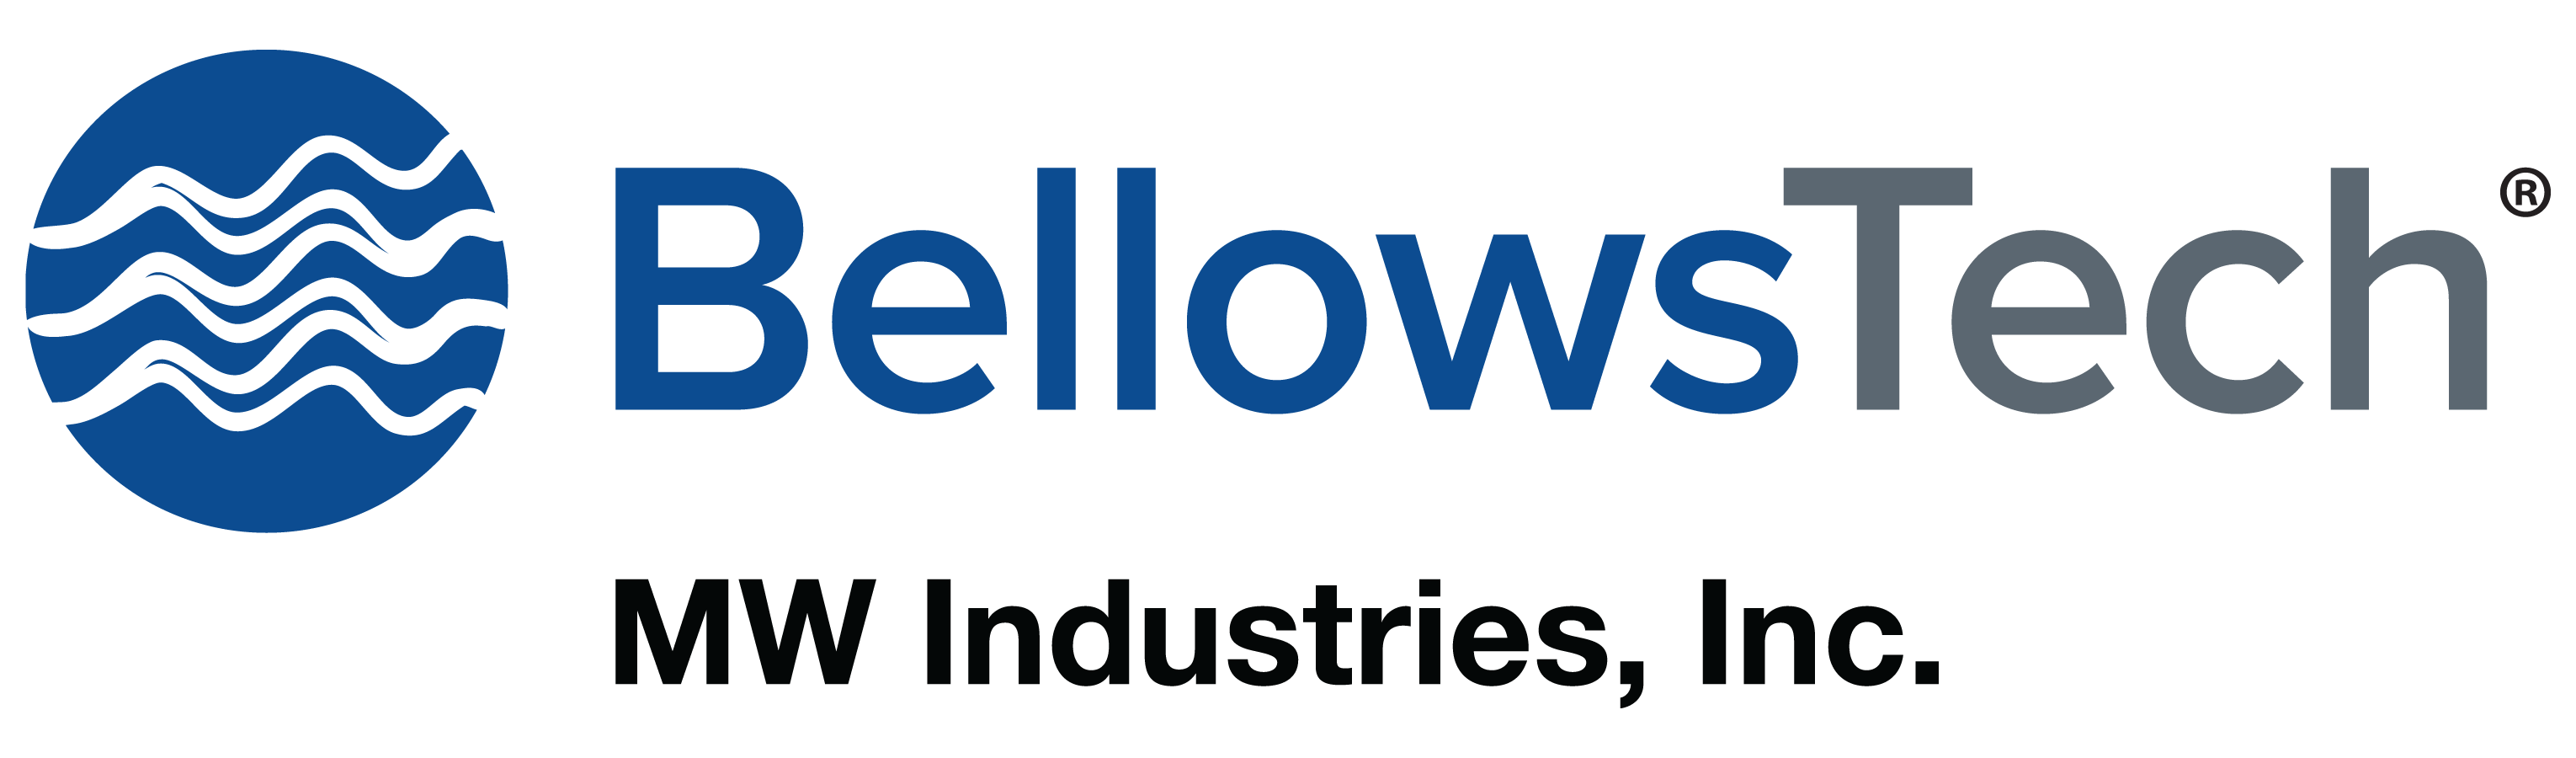 BellowsTech logo